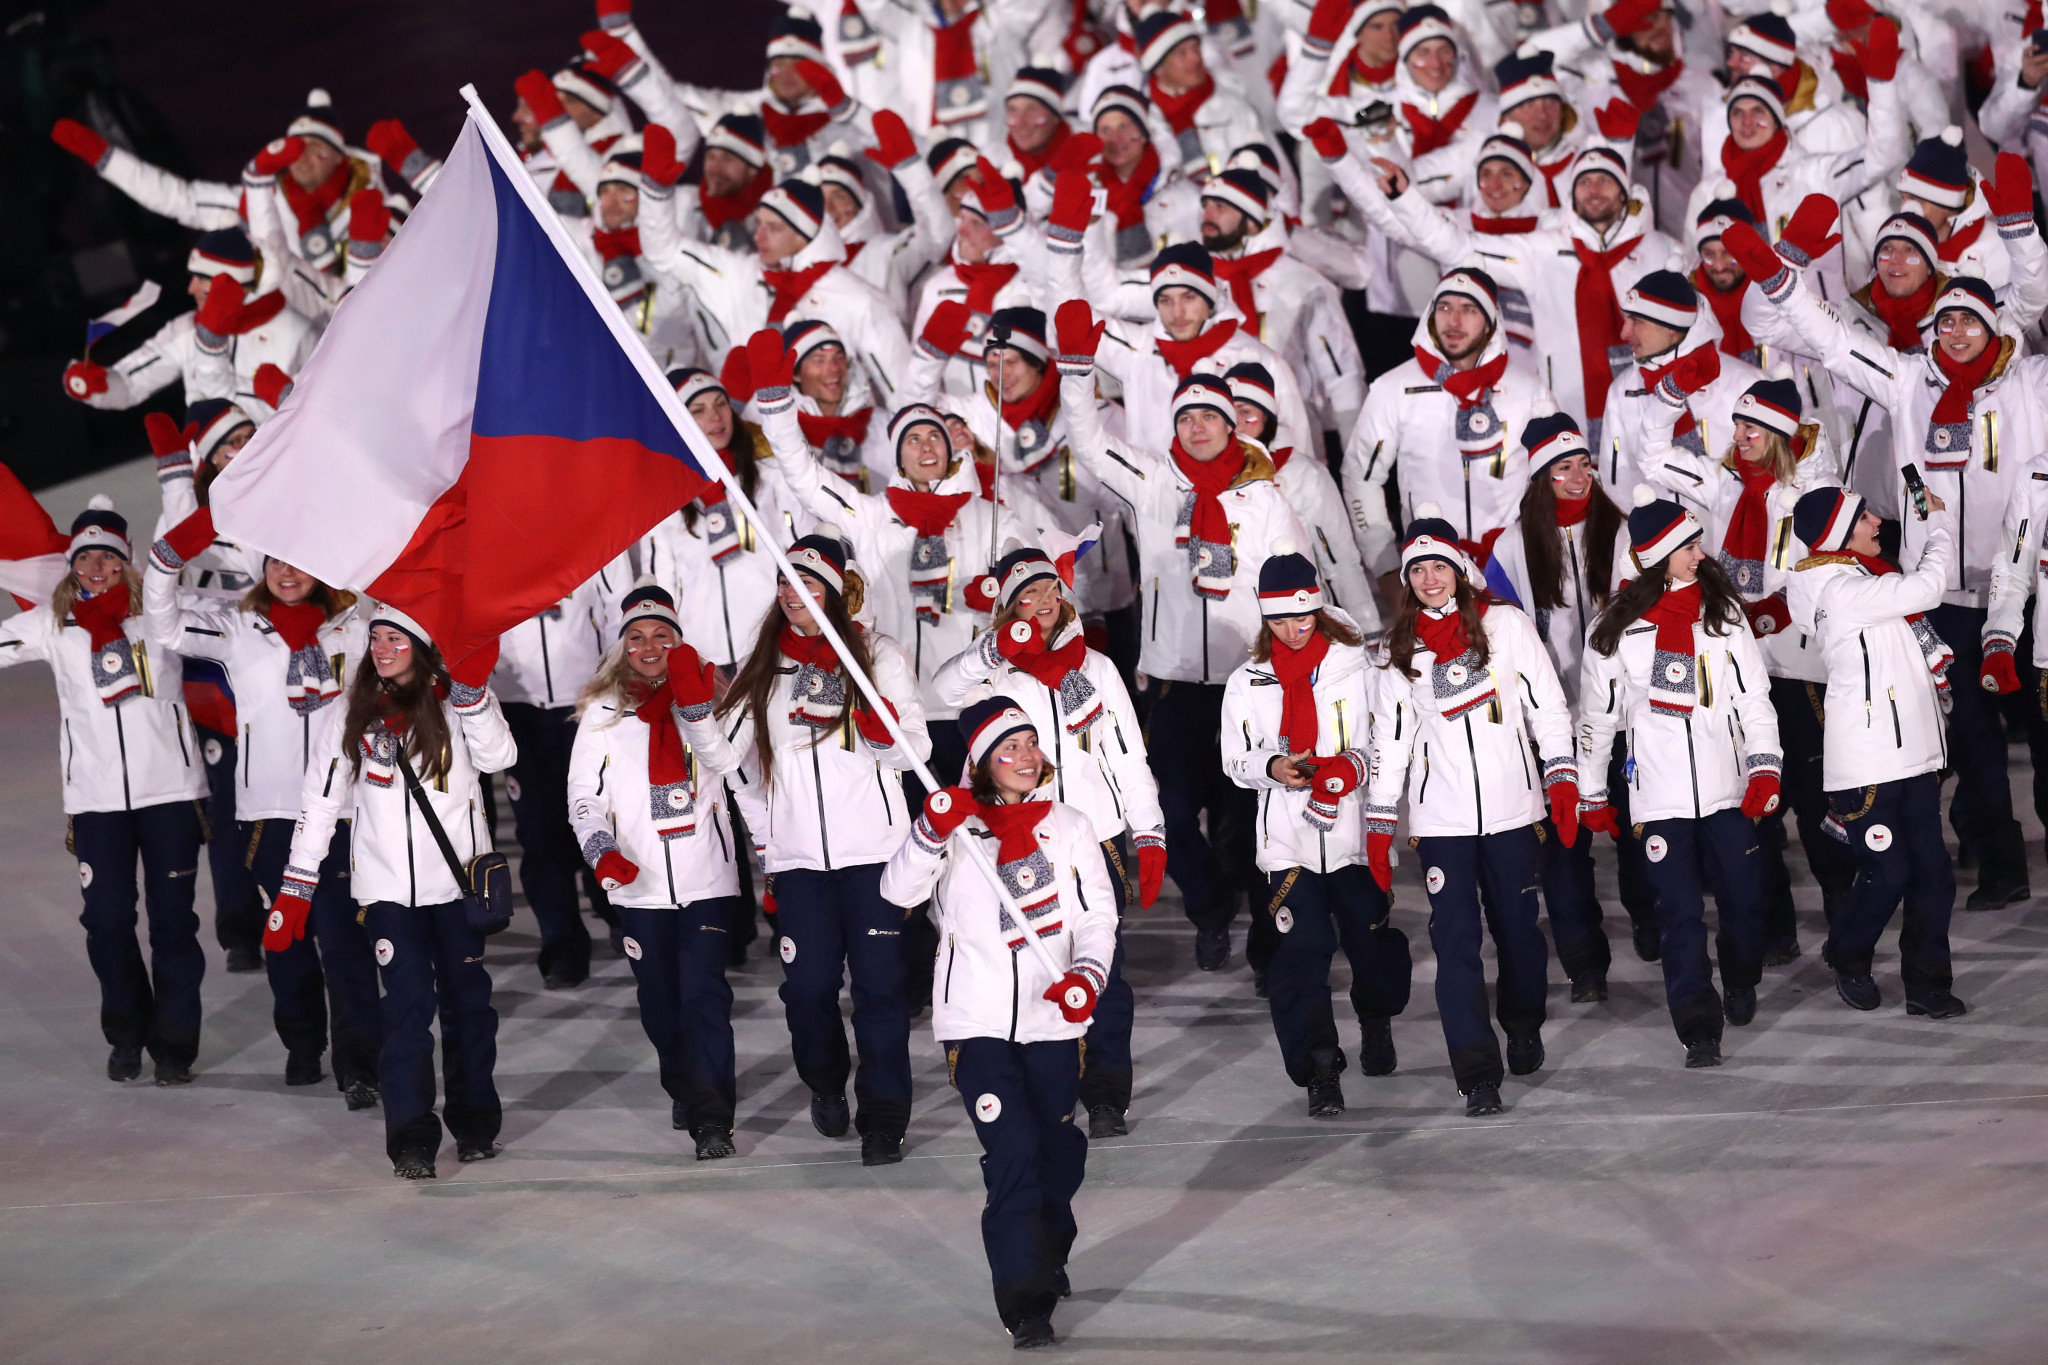 Český olympijský výbor požaduje, aby MOV změnil název země na Česko